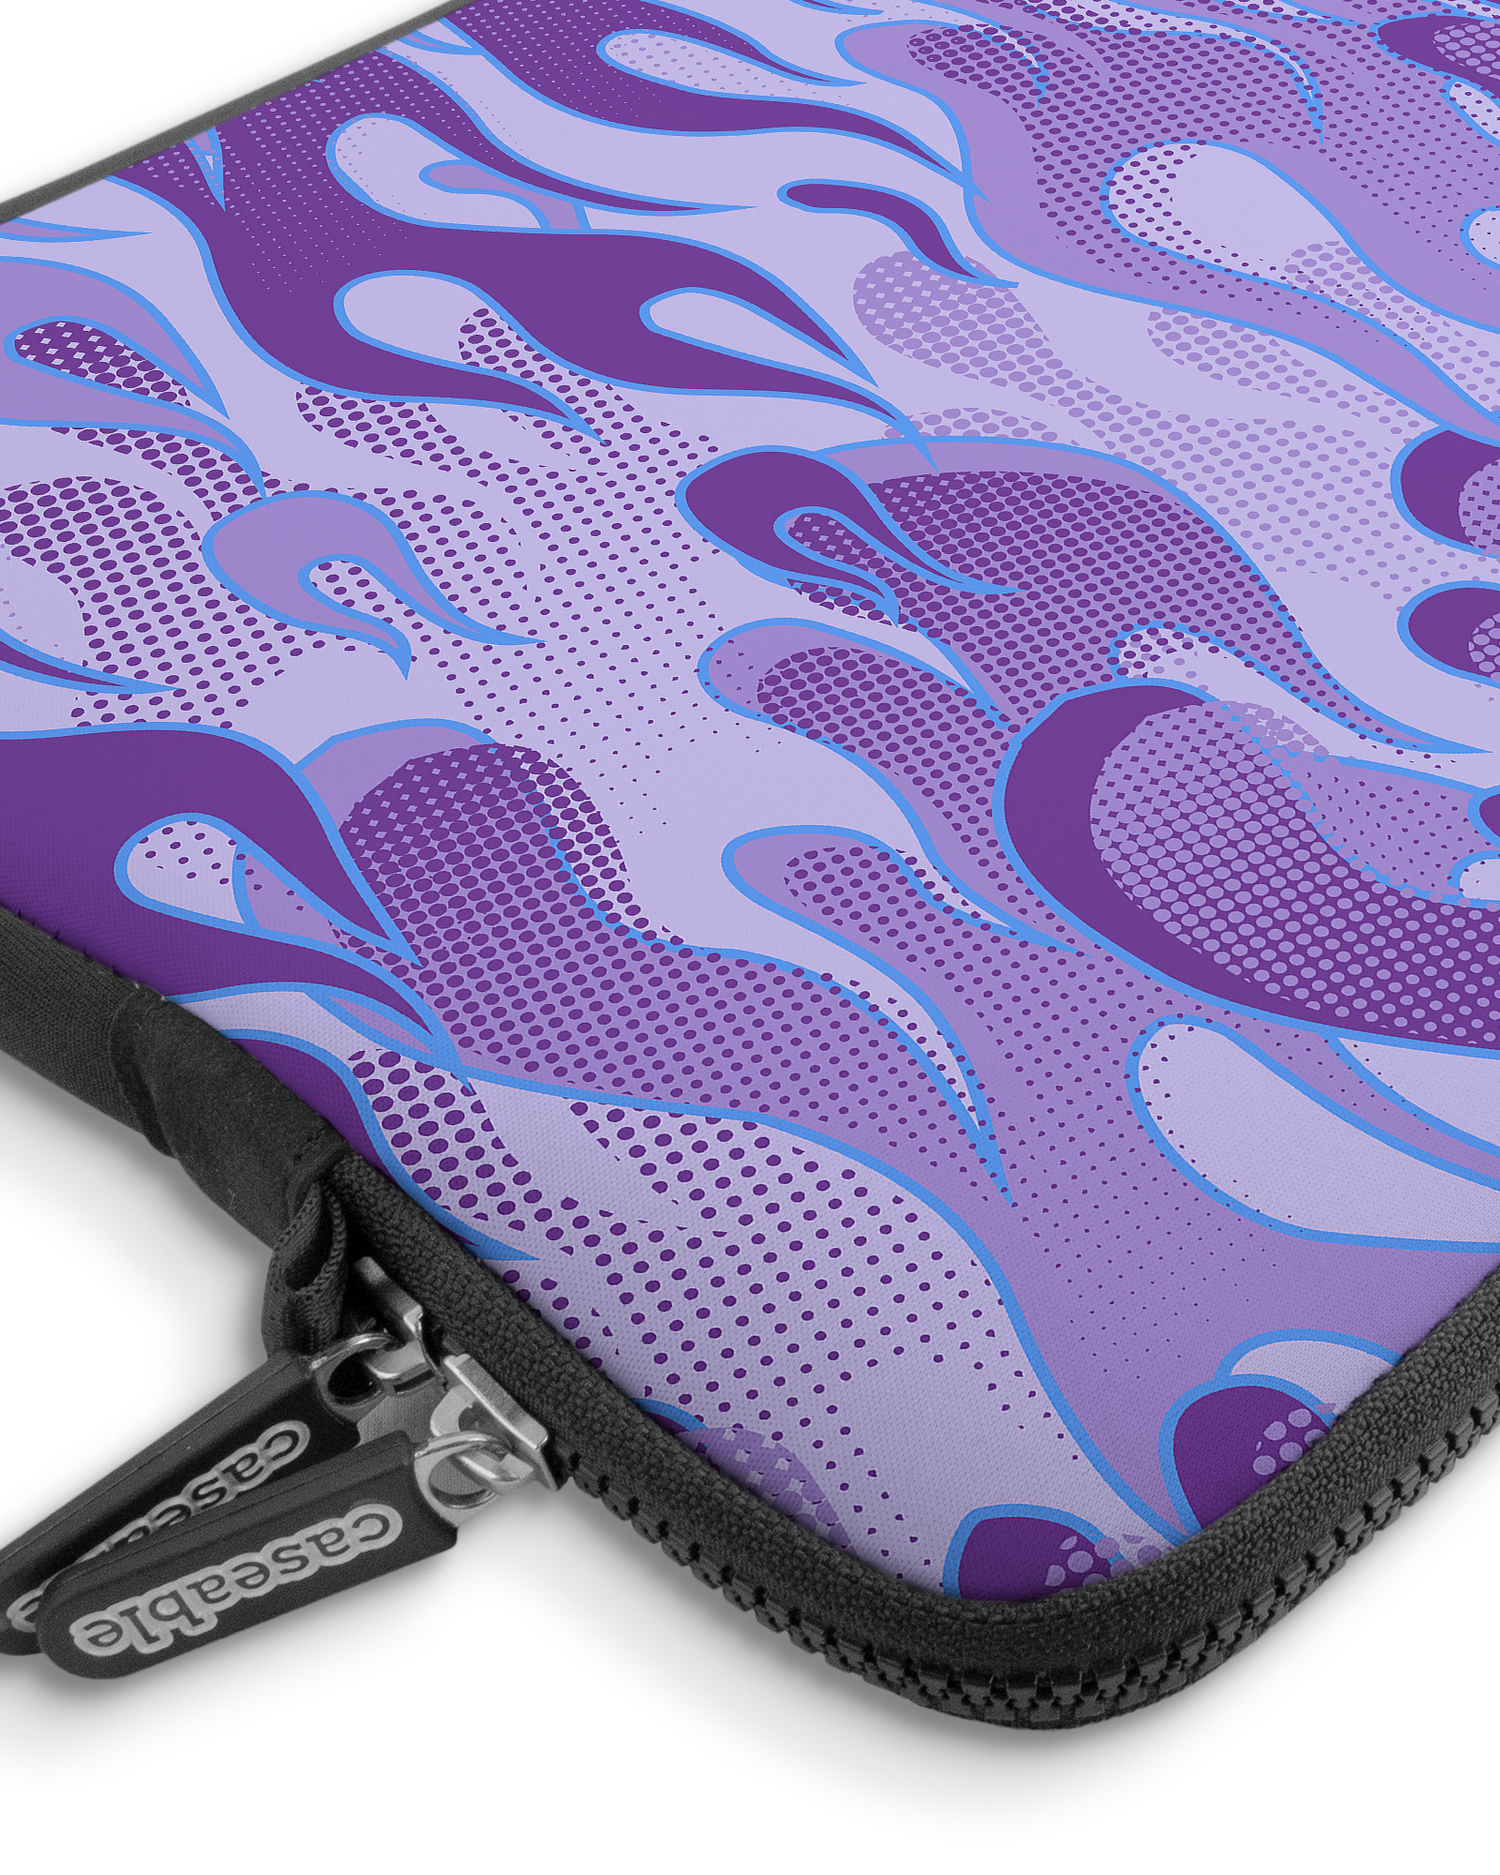 Purple Flames Premium Laptoptasche 13-14 Zoll mit Gerät im Inneren